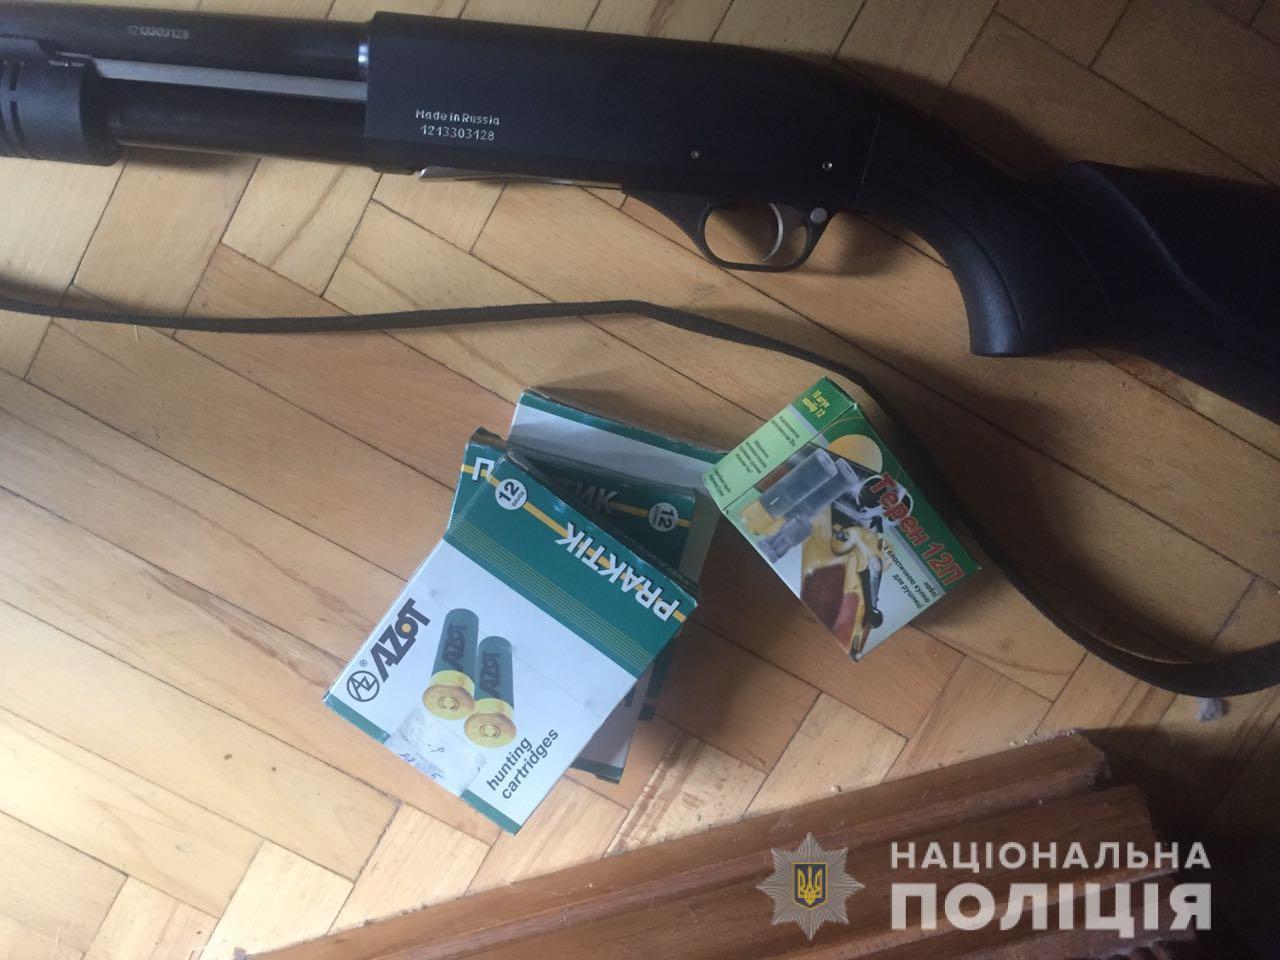 “Наркомани, проститутки!” - у Києві пенсіонерка стріляла з вікна в 20-річну дівчину (ФОТО)